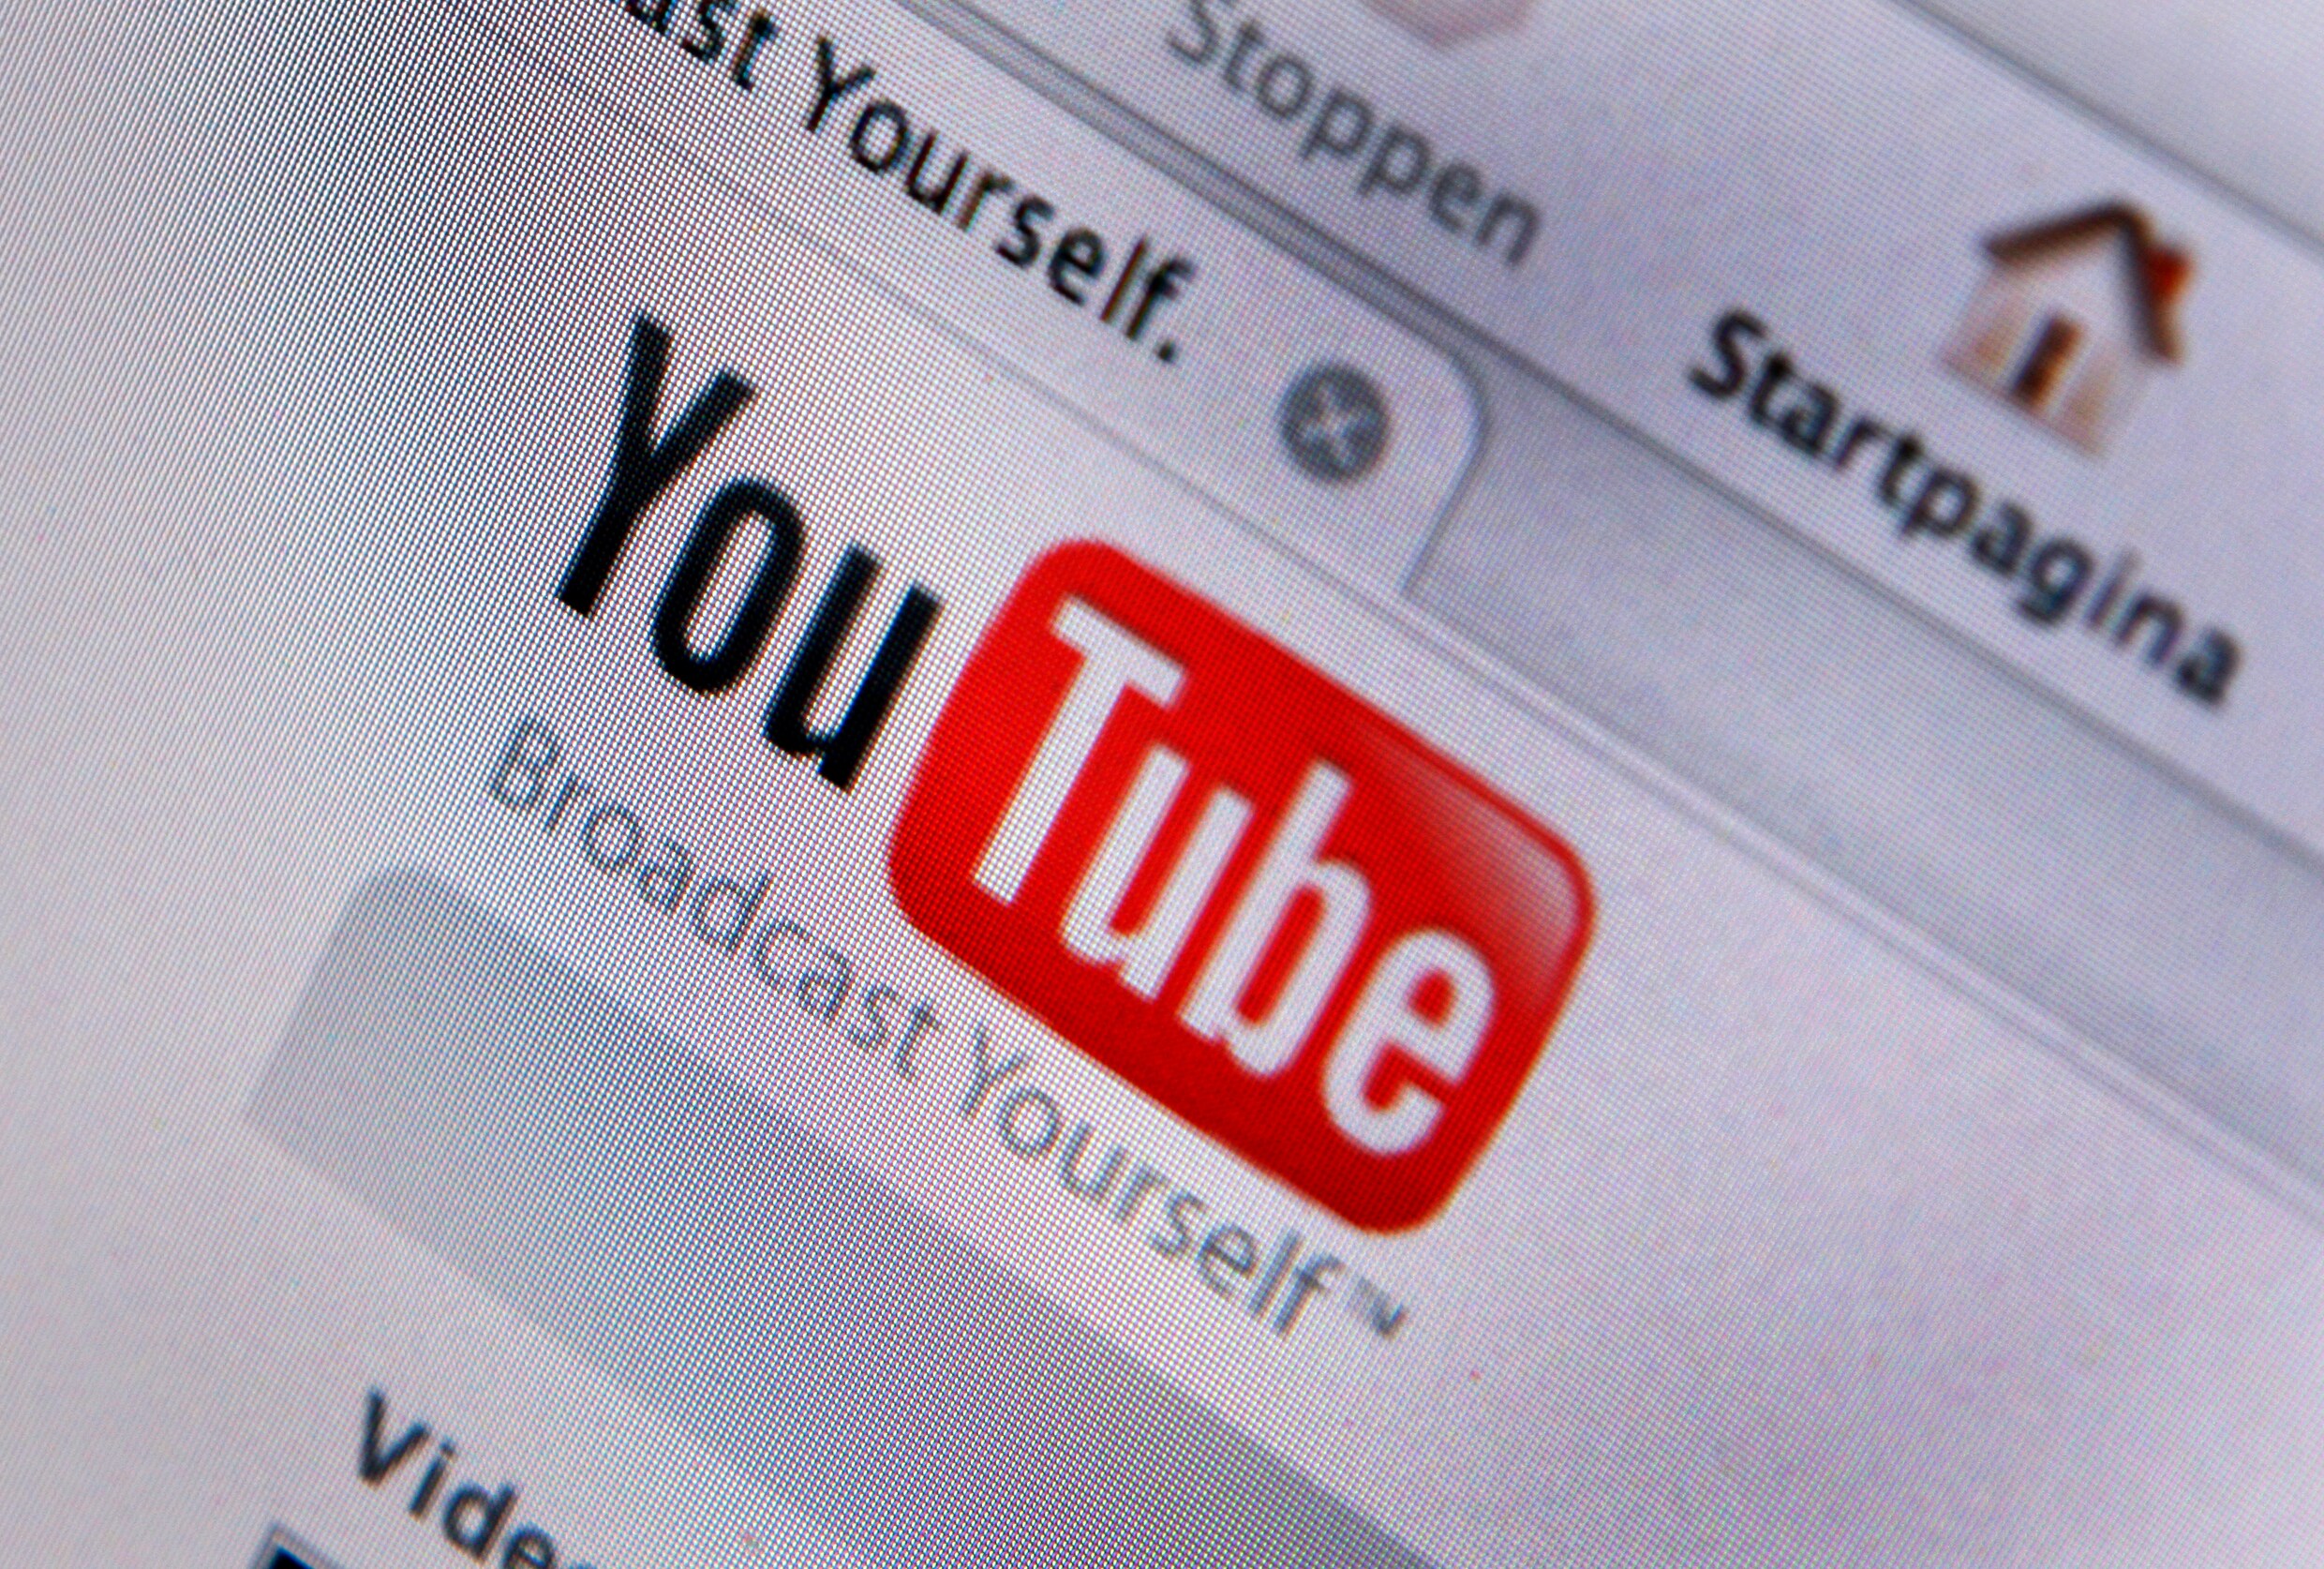 YouTube verwijdert acht miljoen filmpjes in drie maanden tijd